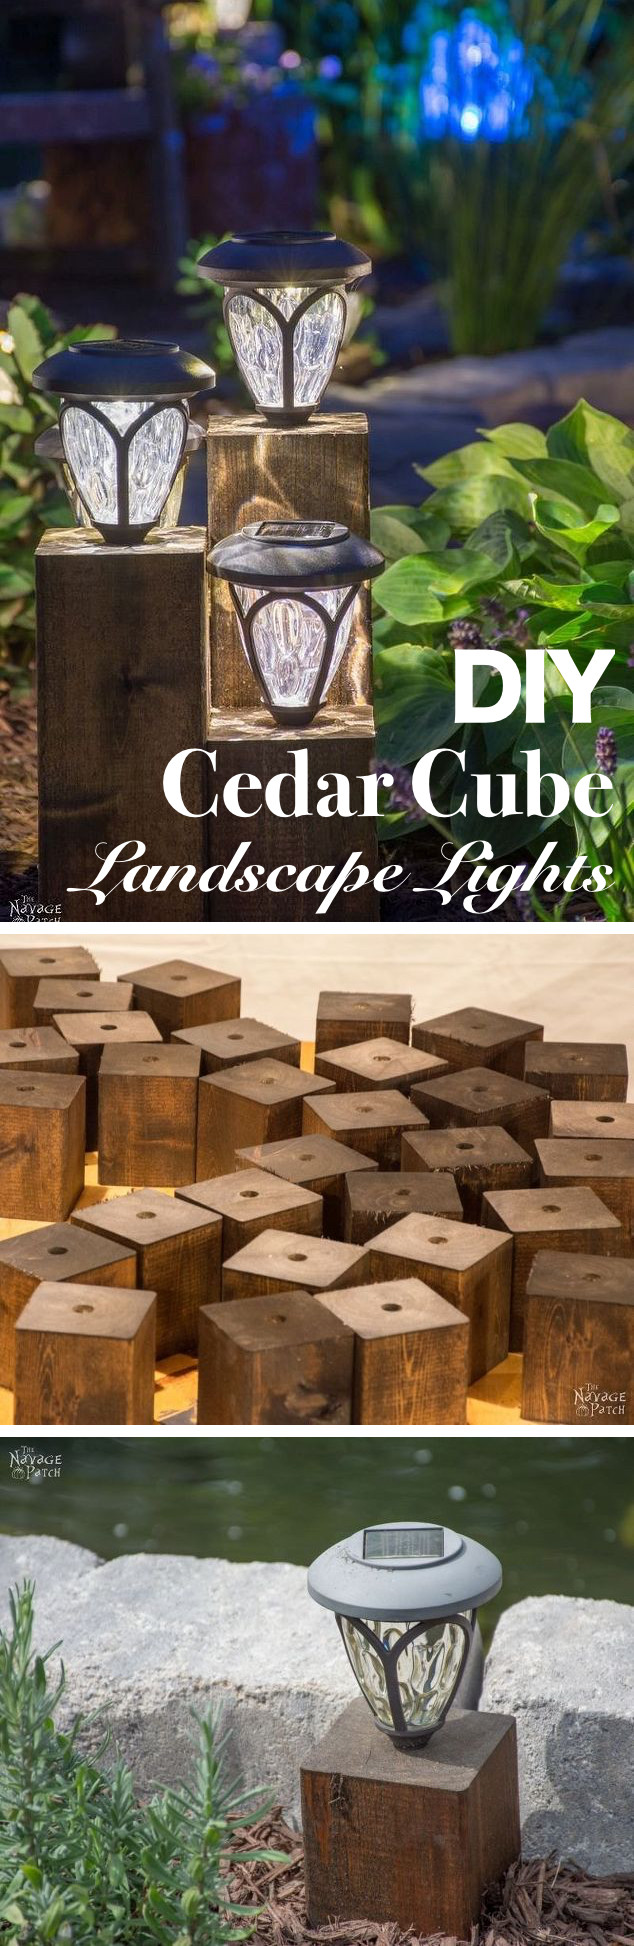 Diy Landscape Lighting
 15 Brilliant DIY Outdoor Lighting Ideas for Summer